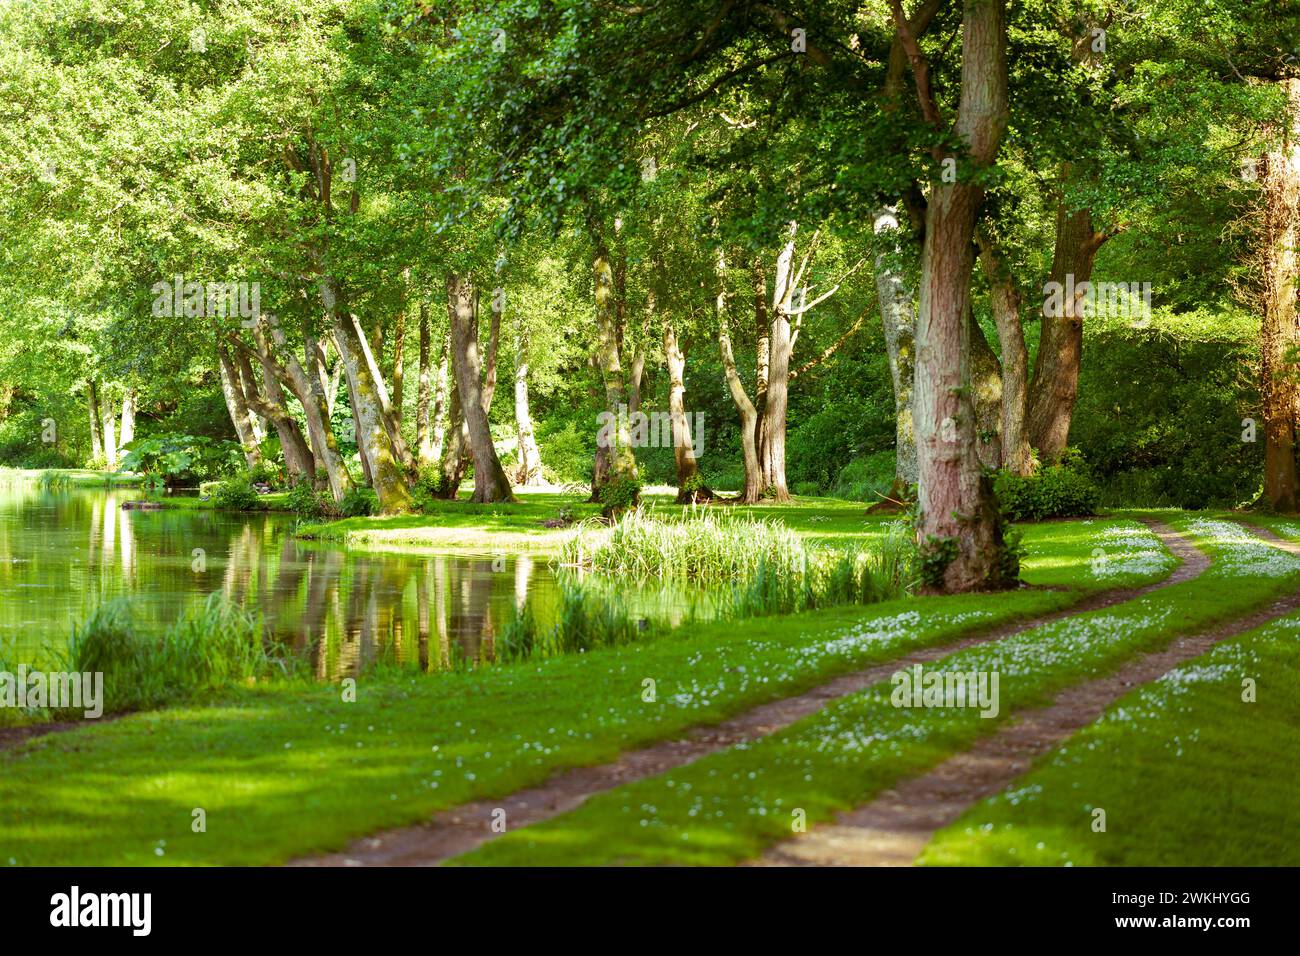 Wanderweg am Wasserteich, See in Albury, Guildford, Surrey, England, UK. Frühlingszeit mit grünen Bäumen, grünem Gras umgeben Stockfoto